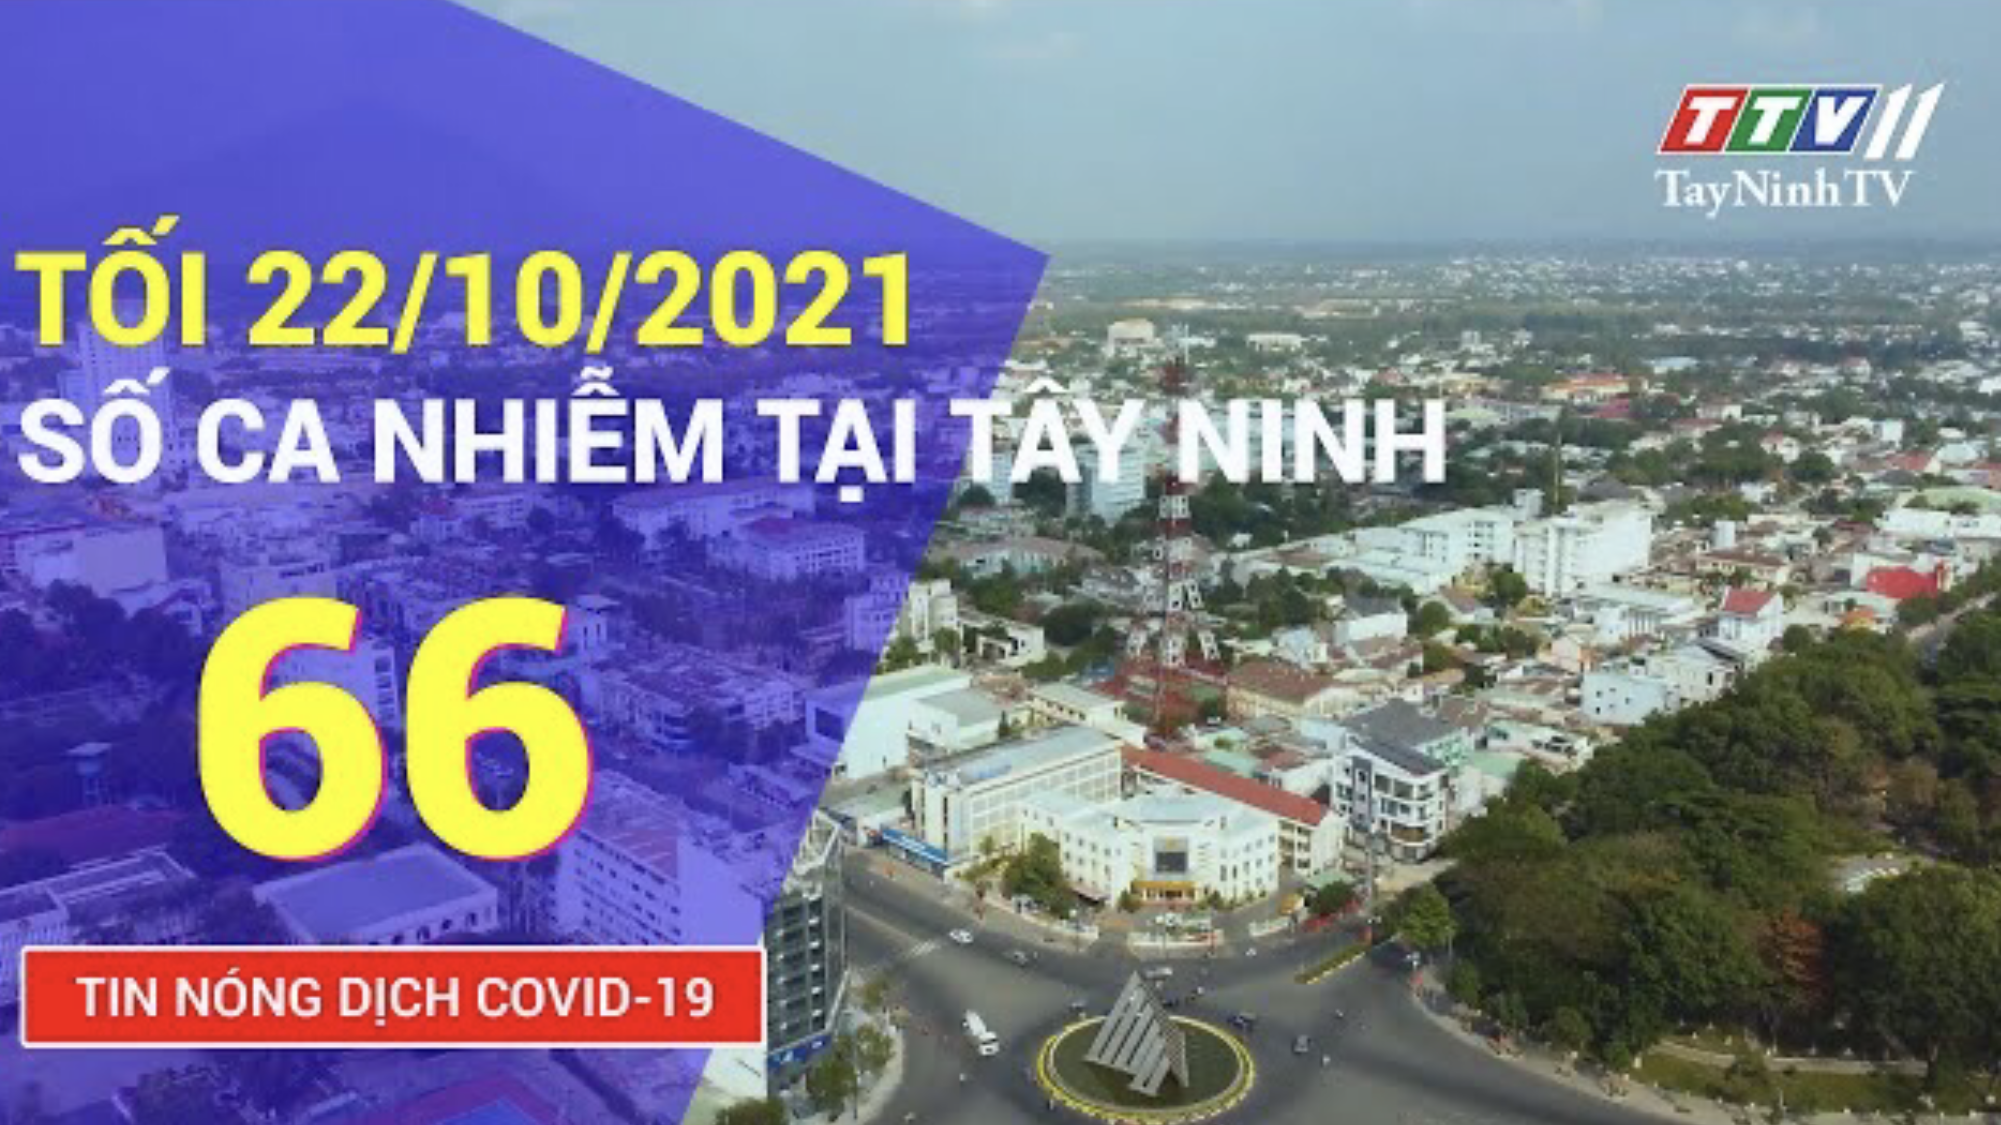 TIN TỨC COVID-19 TỐI 22/10/2021 | Tin tức hôm nay | TayNinhTV